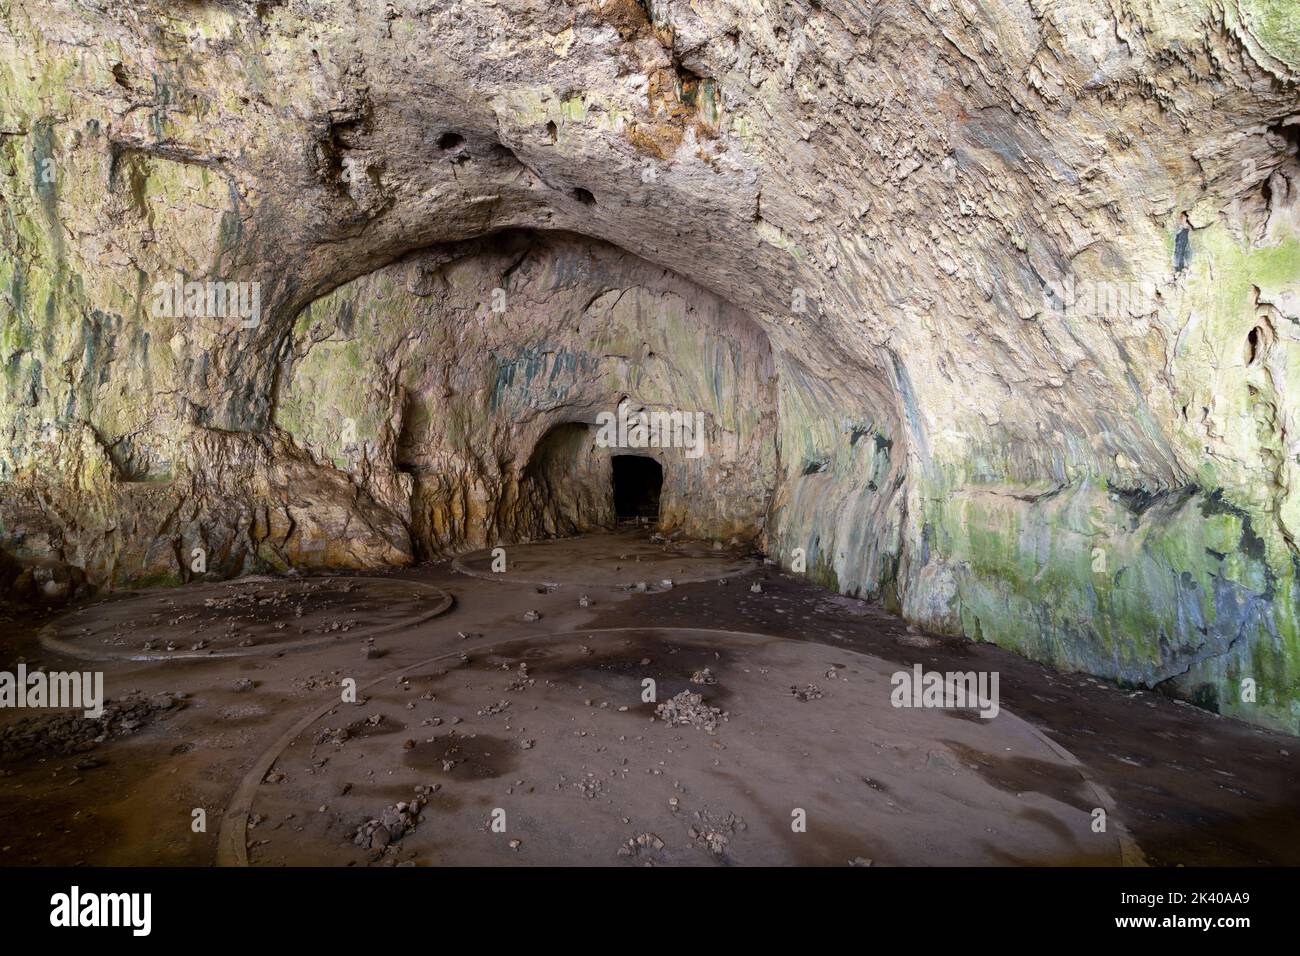 La grotte géante de Devetashka avec un écosystème incroyable à l'intérieur. Situé près de la ville de Lovech en Bulgarie. Banque D'Images